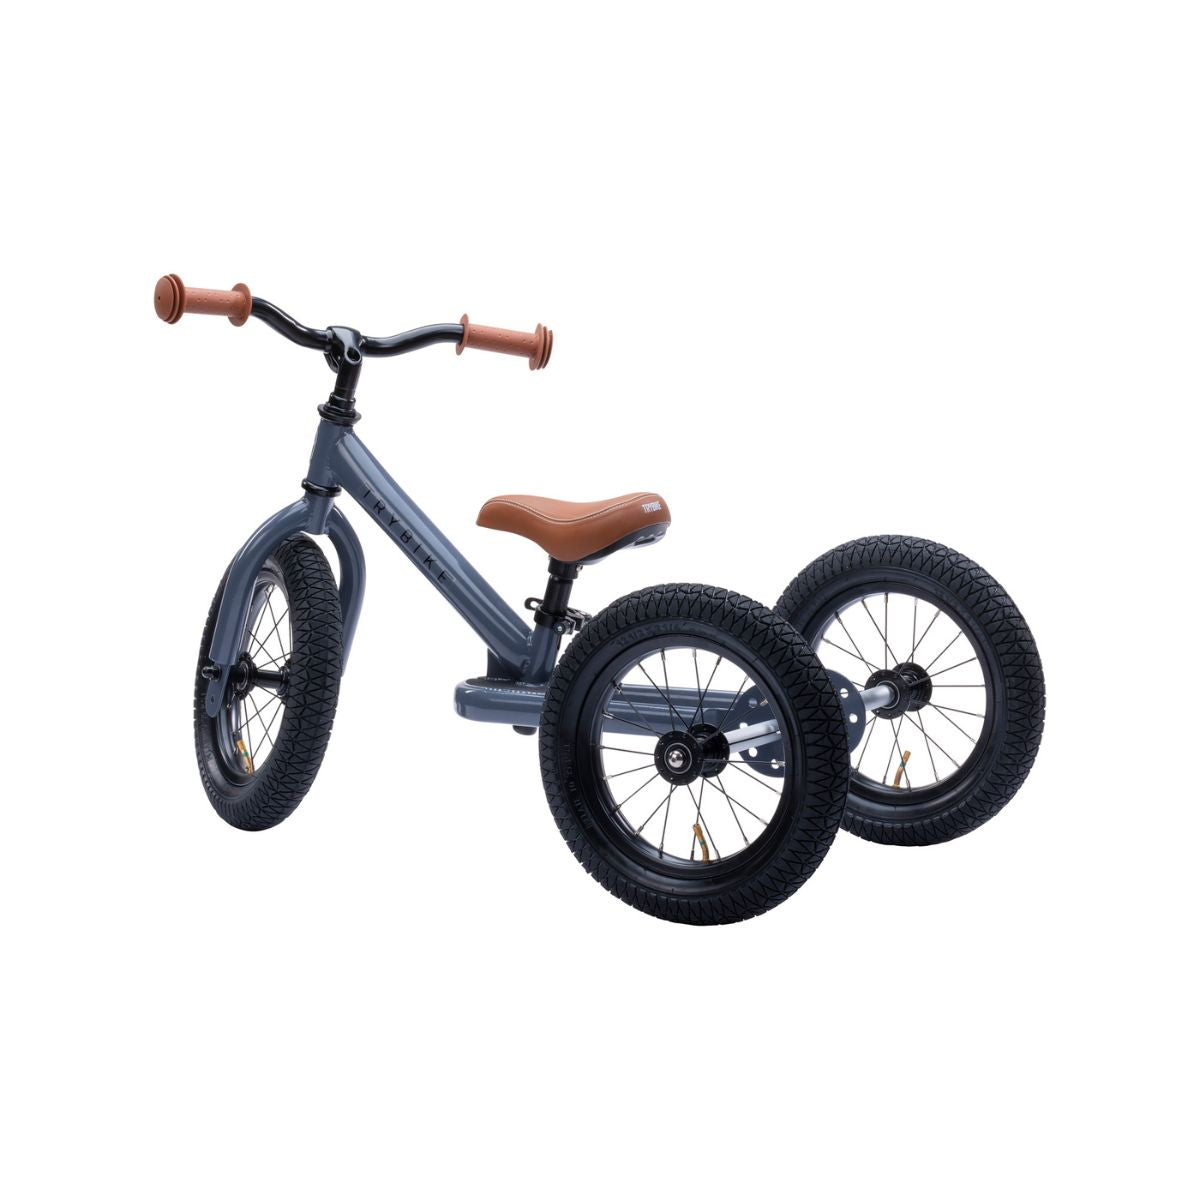 Bestel de Trybike steel 2-in-1 driewieler in de kleur grey en laat je kindje het plezier van fietsen ontdekken! Eenvoudig om te bouwen van een loopfiets naar een echte fiets. Duurzaam en veilig. VanZus